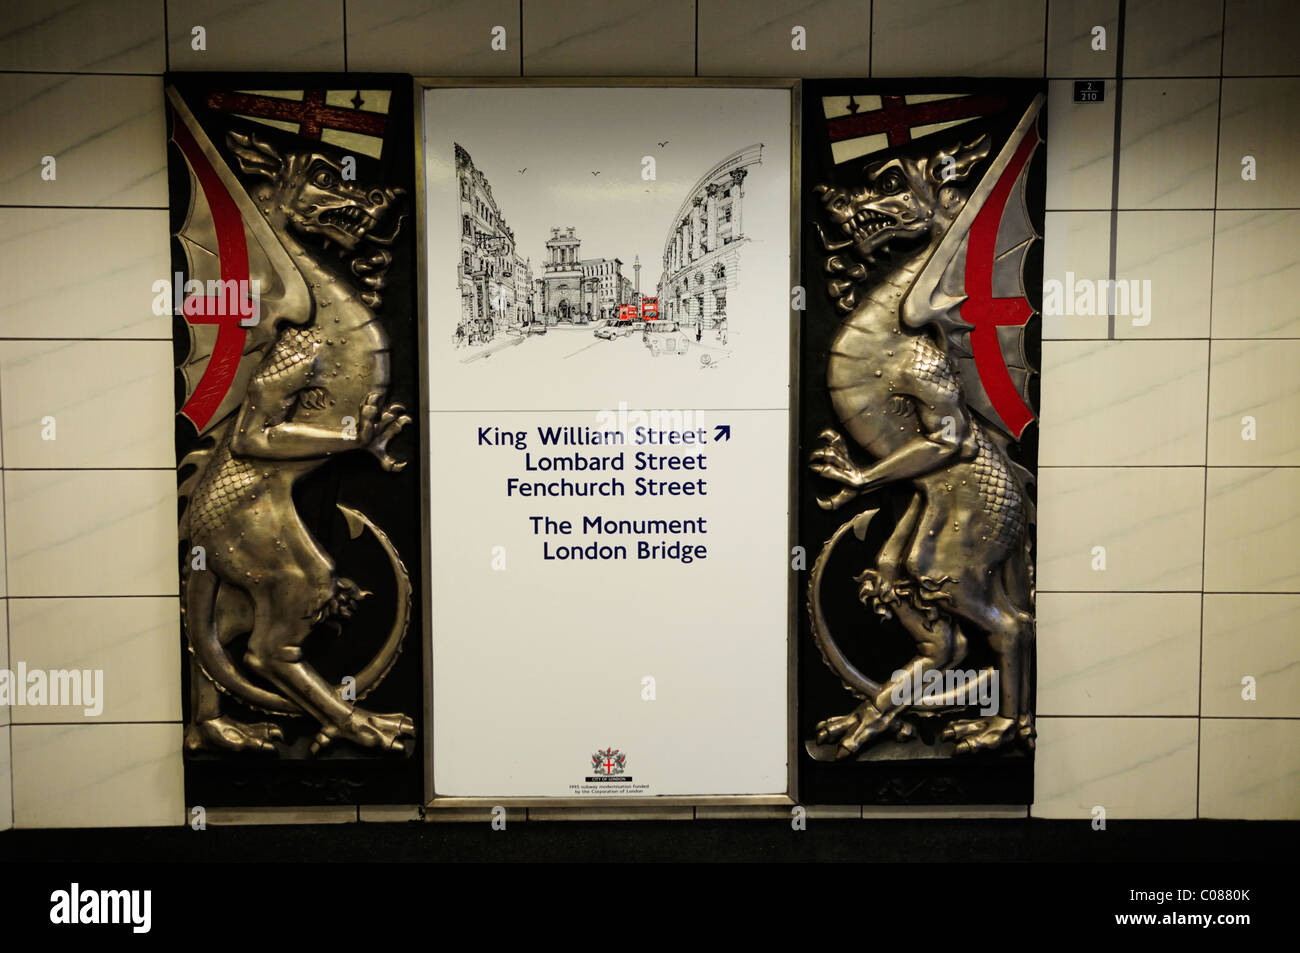 La sortie de la station de métro Bank signe avec Dragon City de Londres, Londres, Angleterre, Royaume-Uni Banque D'Images